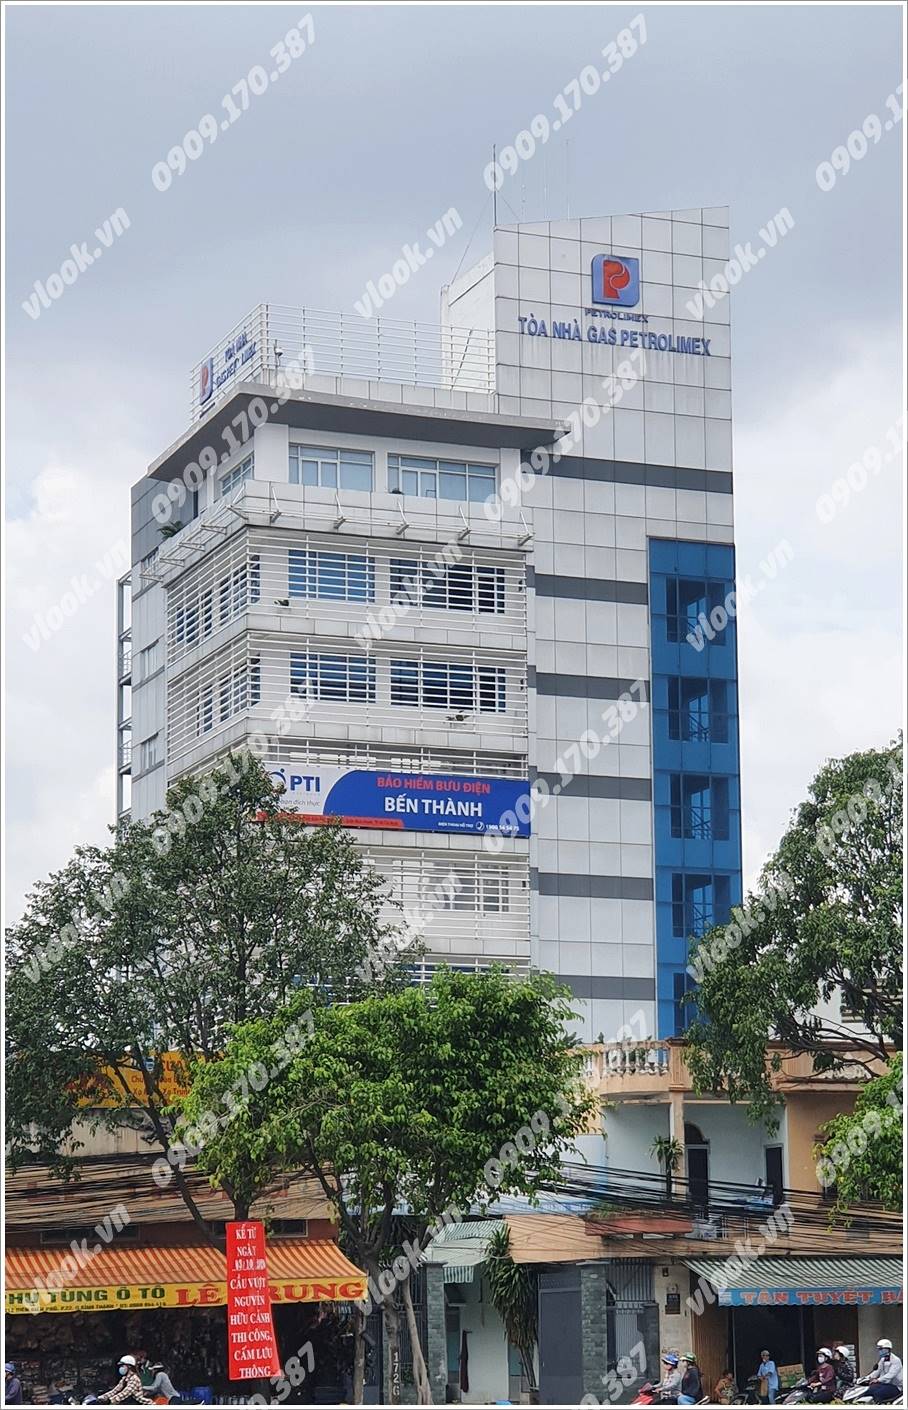 Cao ốc cho thuê văn phòng Tòa nhà Gas Petrolimex, Điện Biên Phủ, Quận Bình Thạnh, TPHCM - vlook.vn